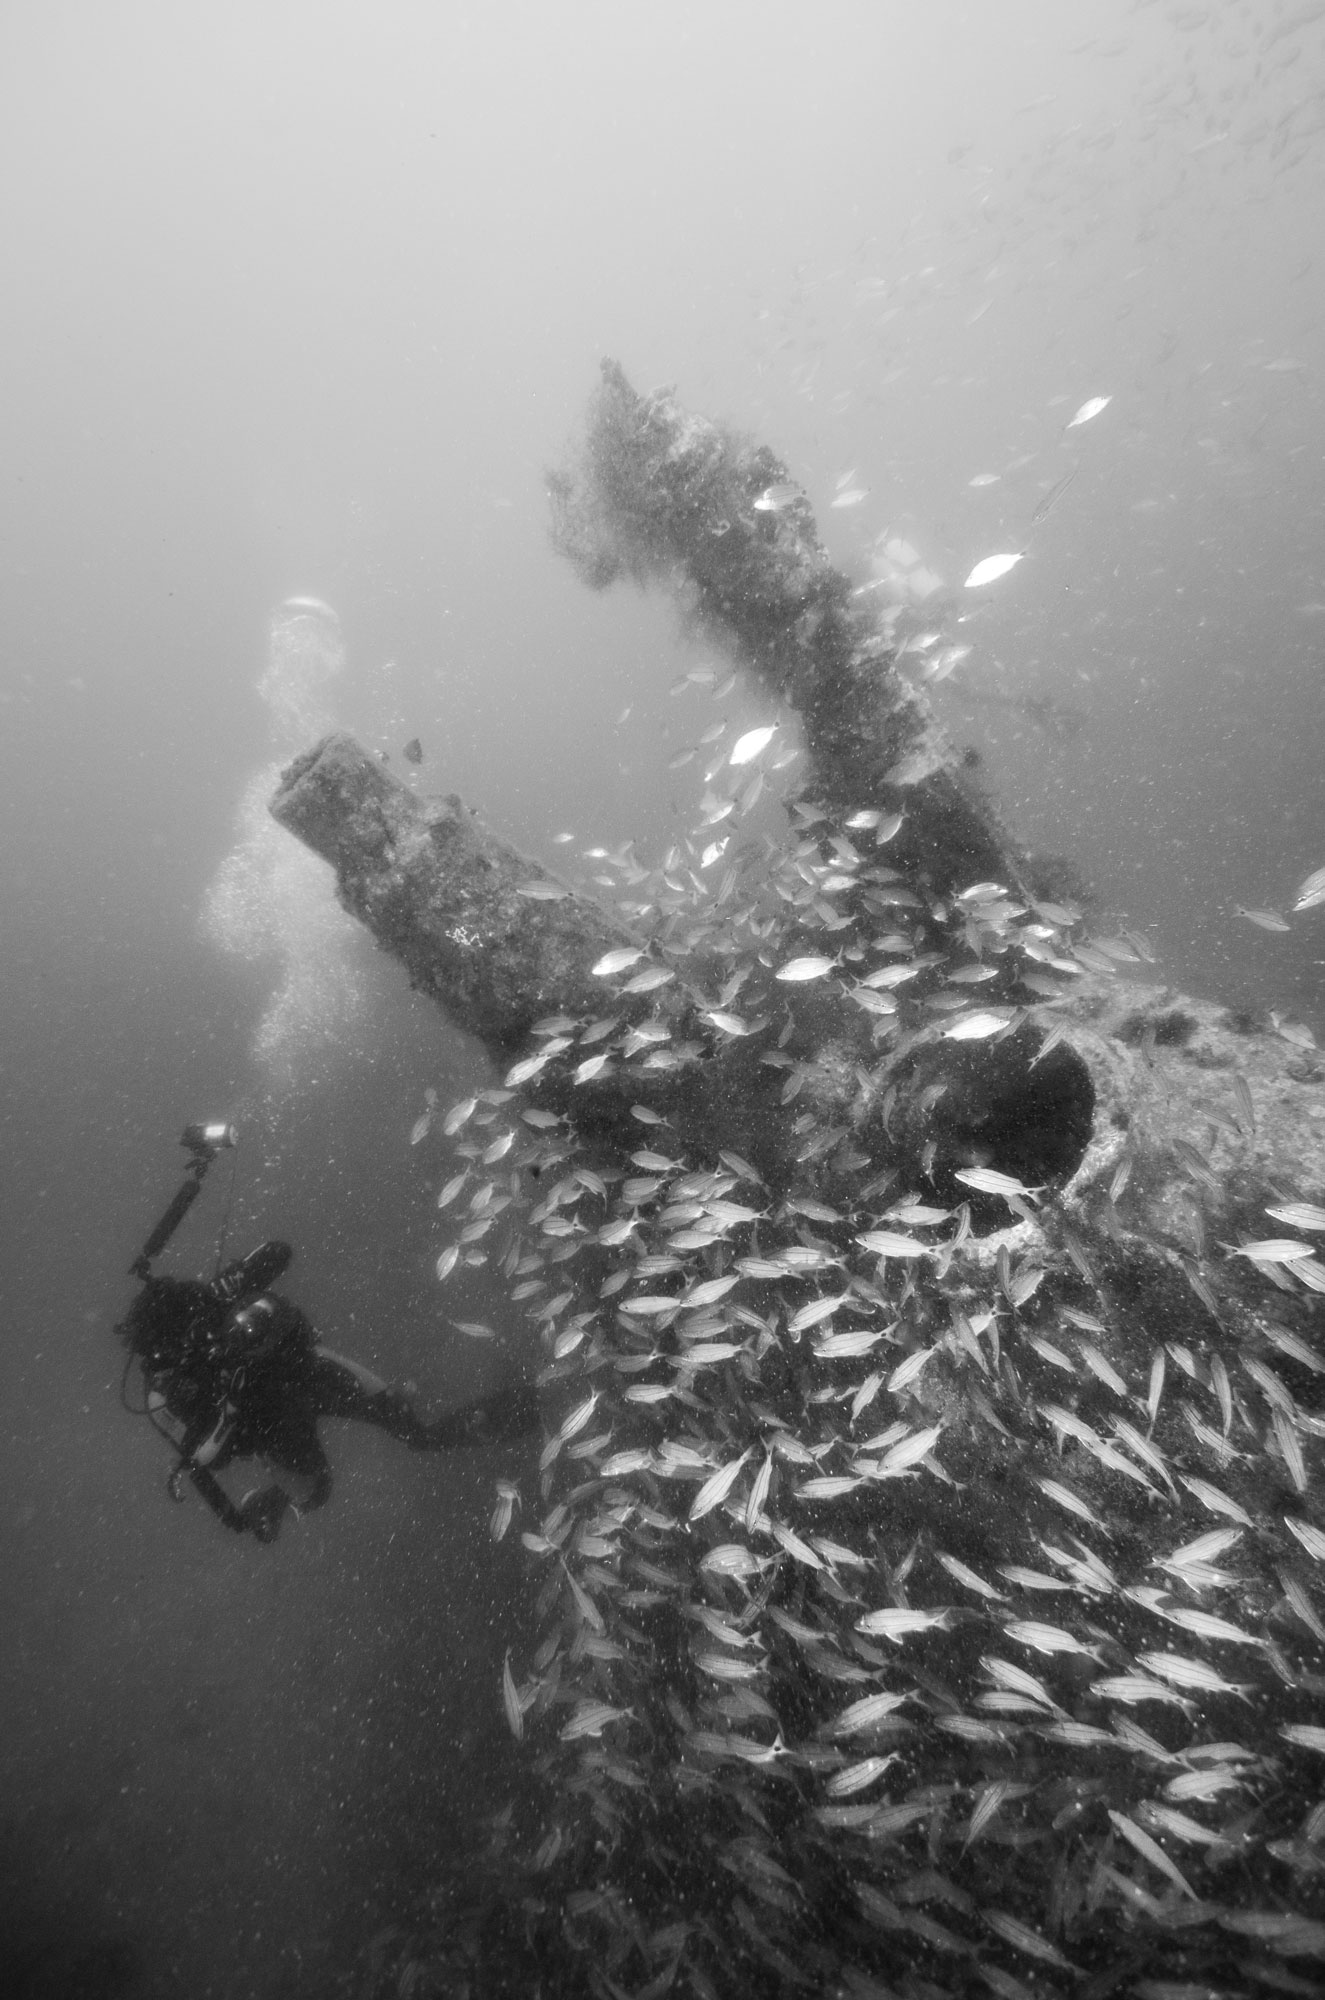 U352 Shipwreck North Carolina